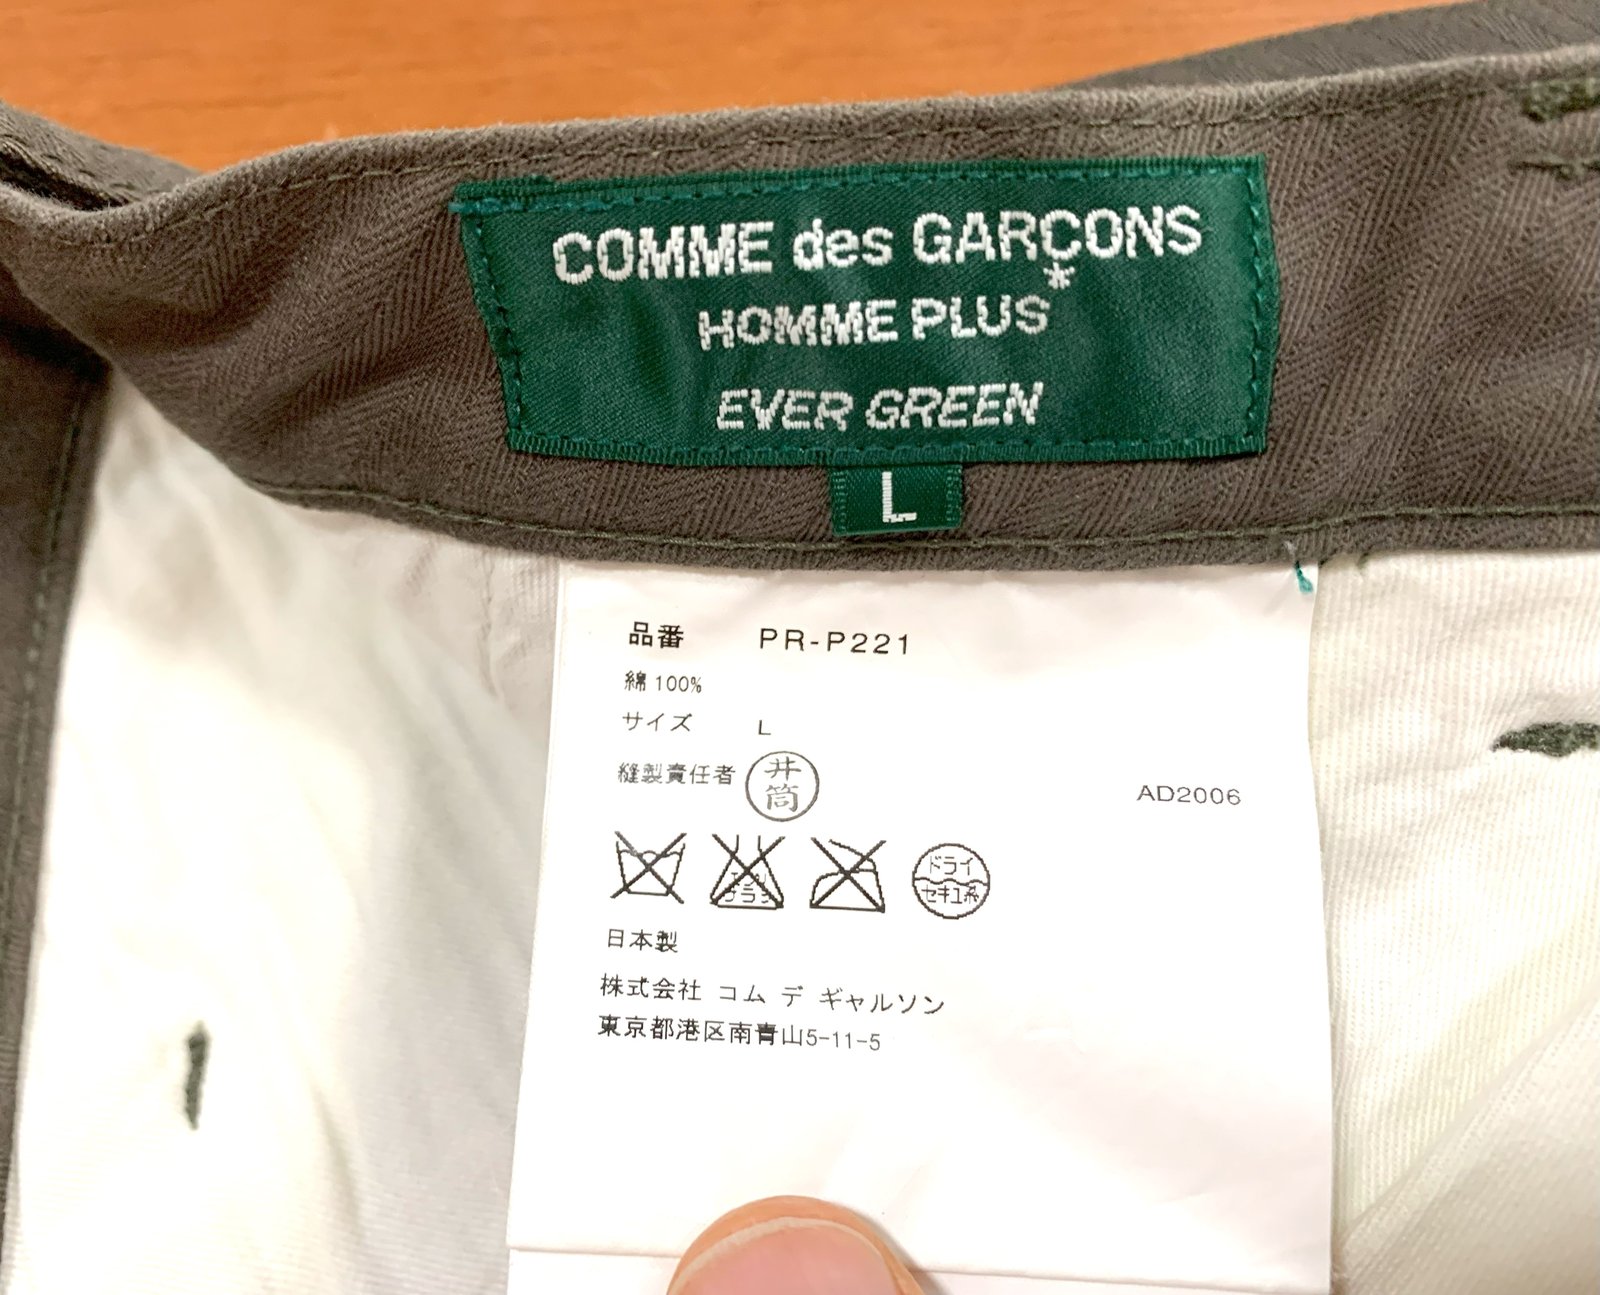 Comme des Garcons Homme Plus Evergreen 2006 pants, size L (34 